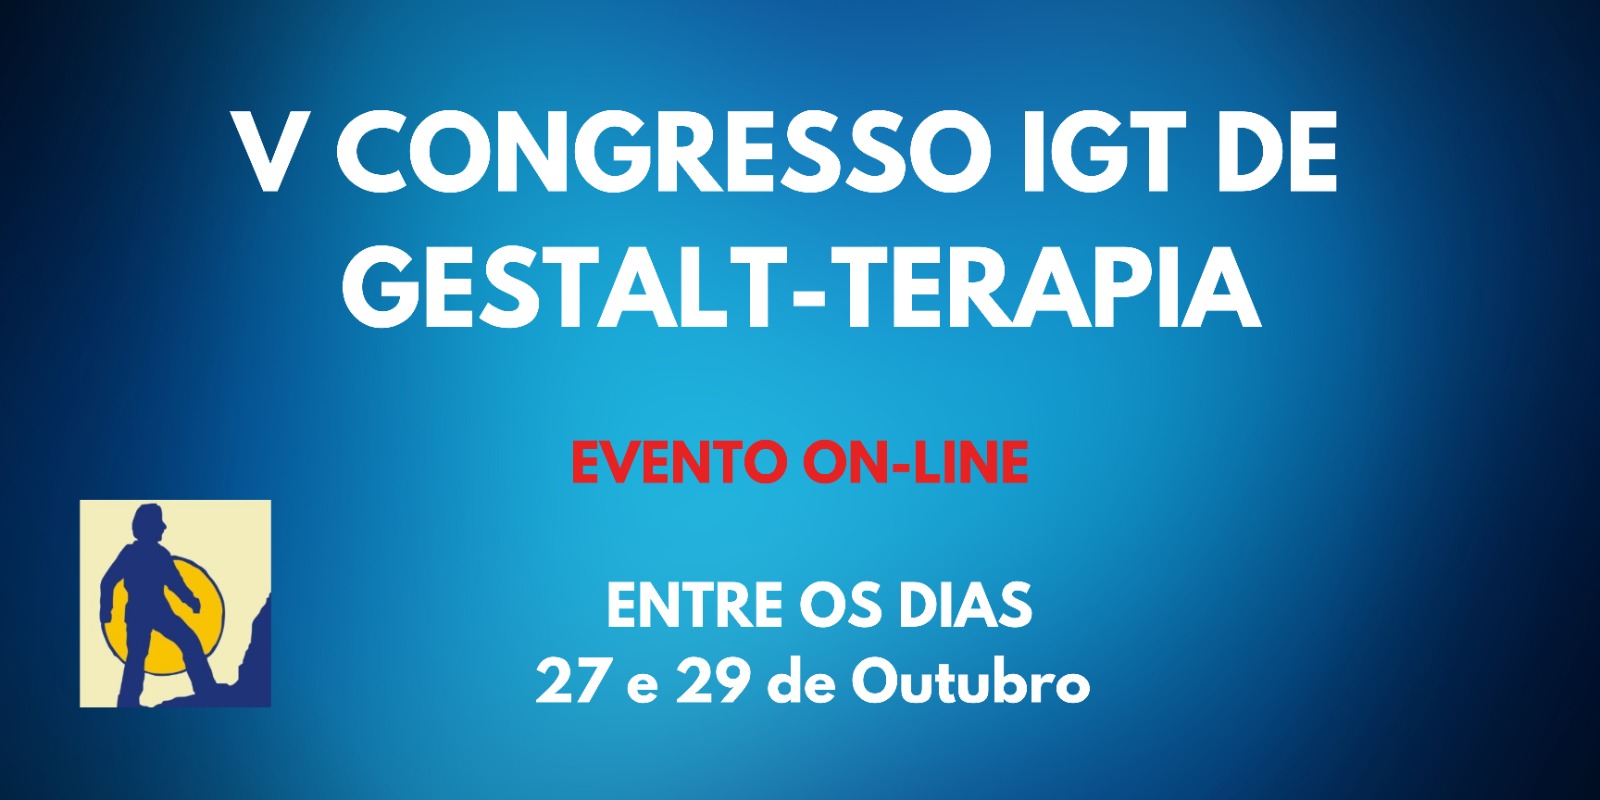 V Congresso IGT de Gestalt-Terapia | Entre os dias 27 e 29 de Outubro